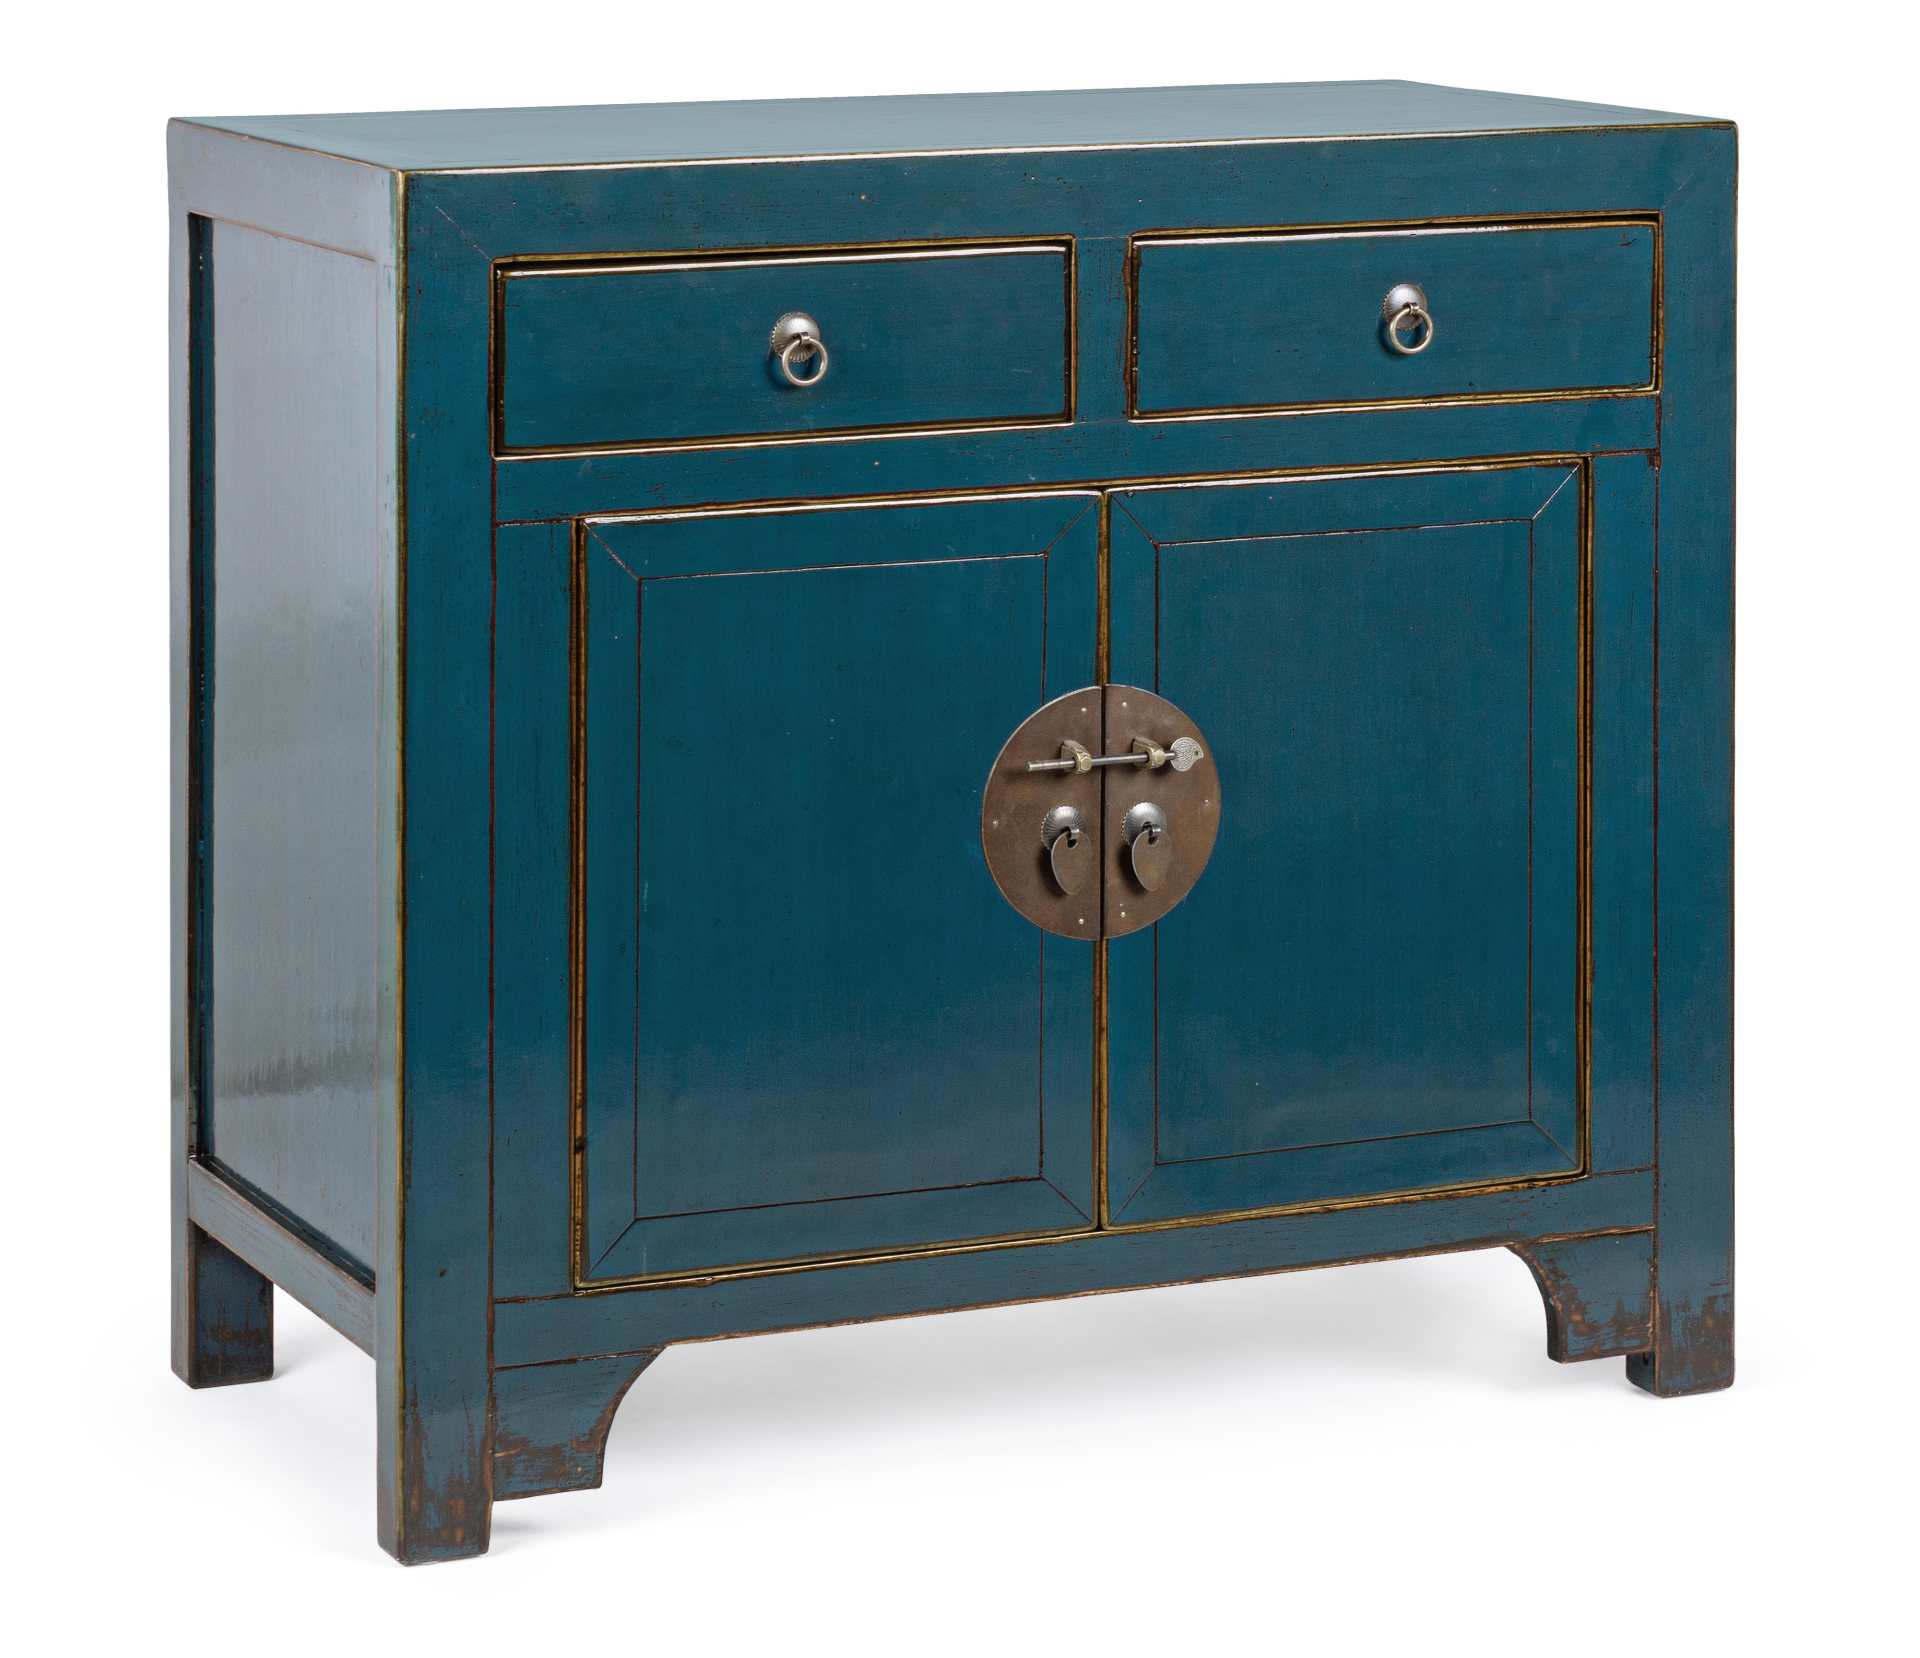 Die Kommode Jinan überzeugt mit ihrem klassischen Design. Gefertigt wurde sie aus Ulmen-Holz, welches einen blauen Farbton besitzt. Das Gestell ist auch aus Ulmen-Holz. Die Kommode verfügt über zwei Türen und zwei Schubladen. Die Breite beträgt 91 cm.